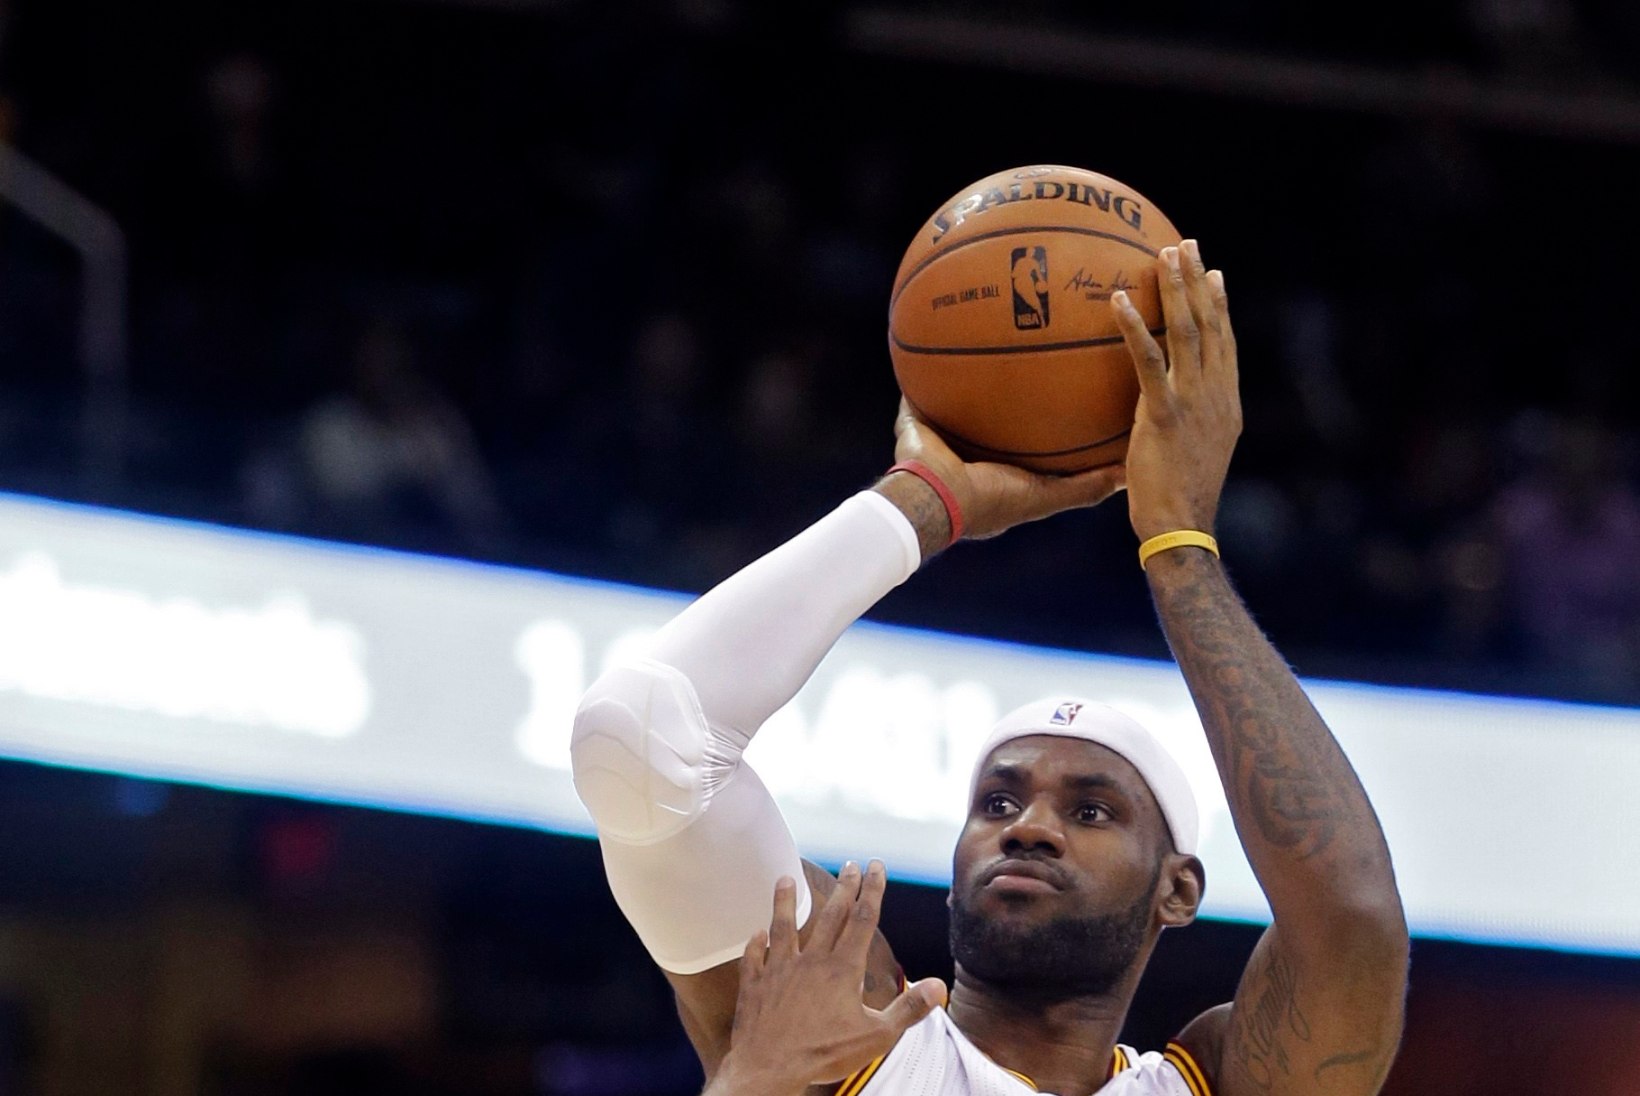 VIDEOD: Cavaliers tuuseldas LeBron Jamesi naasmismängus Maccabit